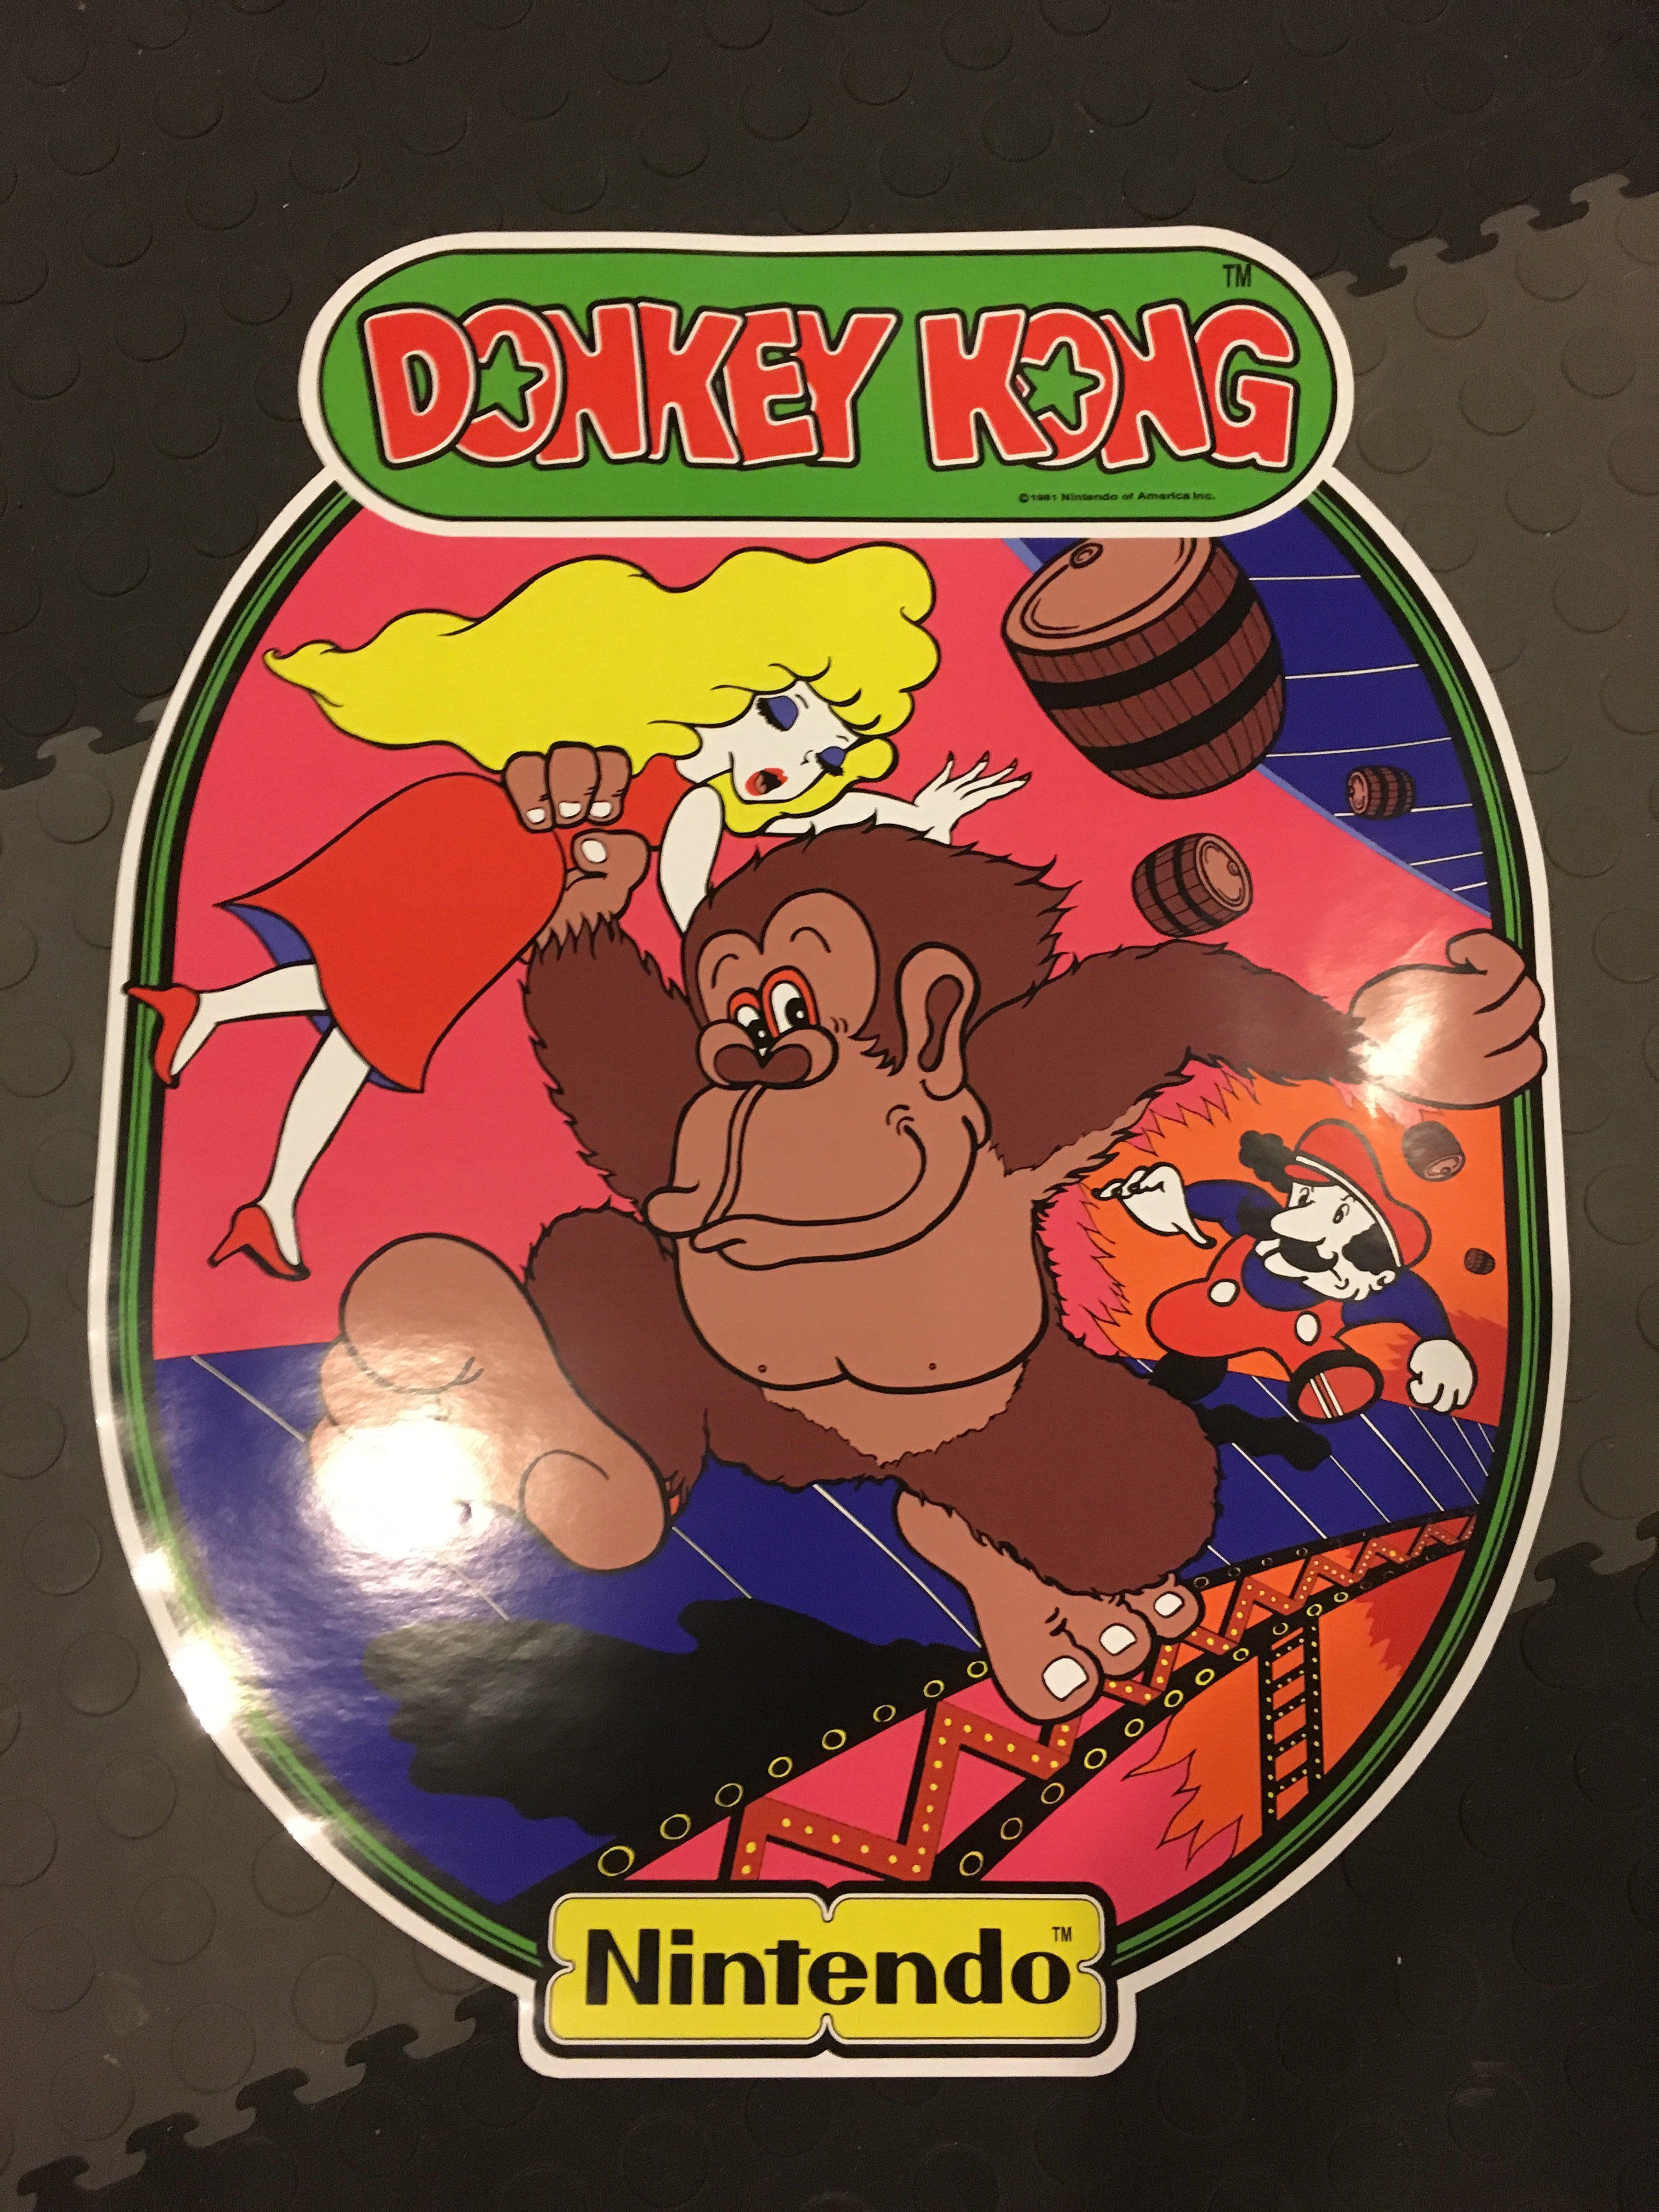 Arte secundario de Donkey Kong